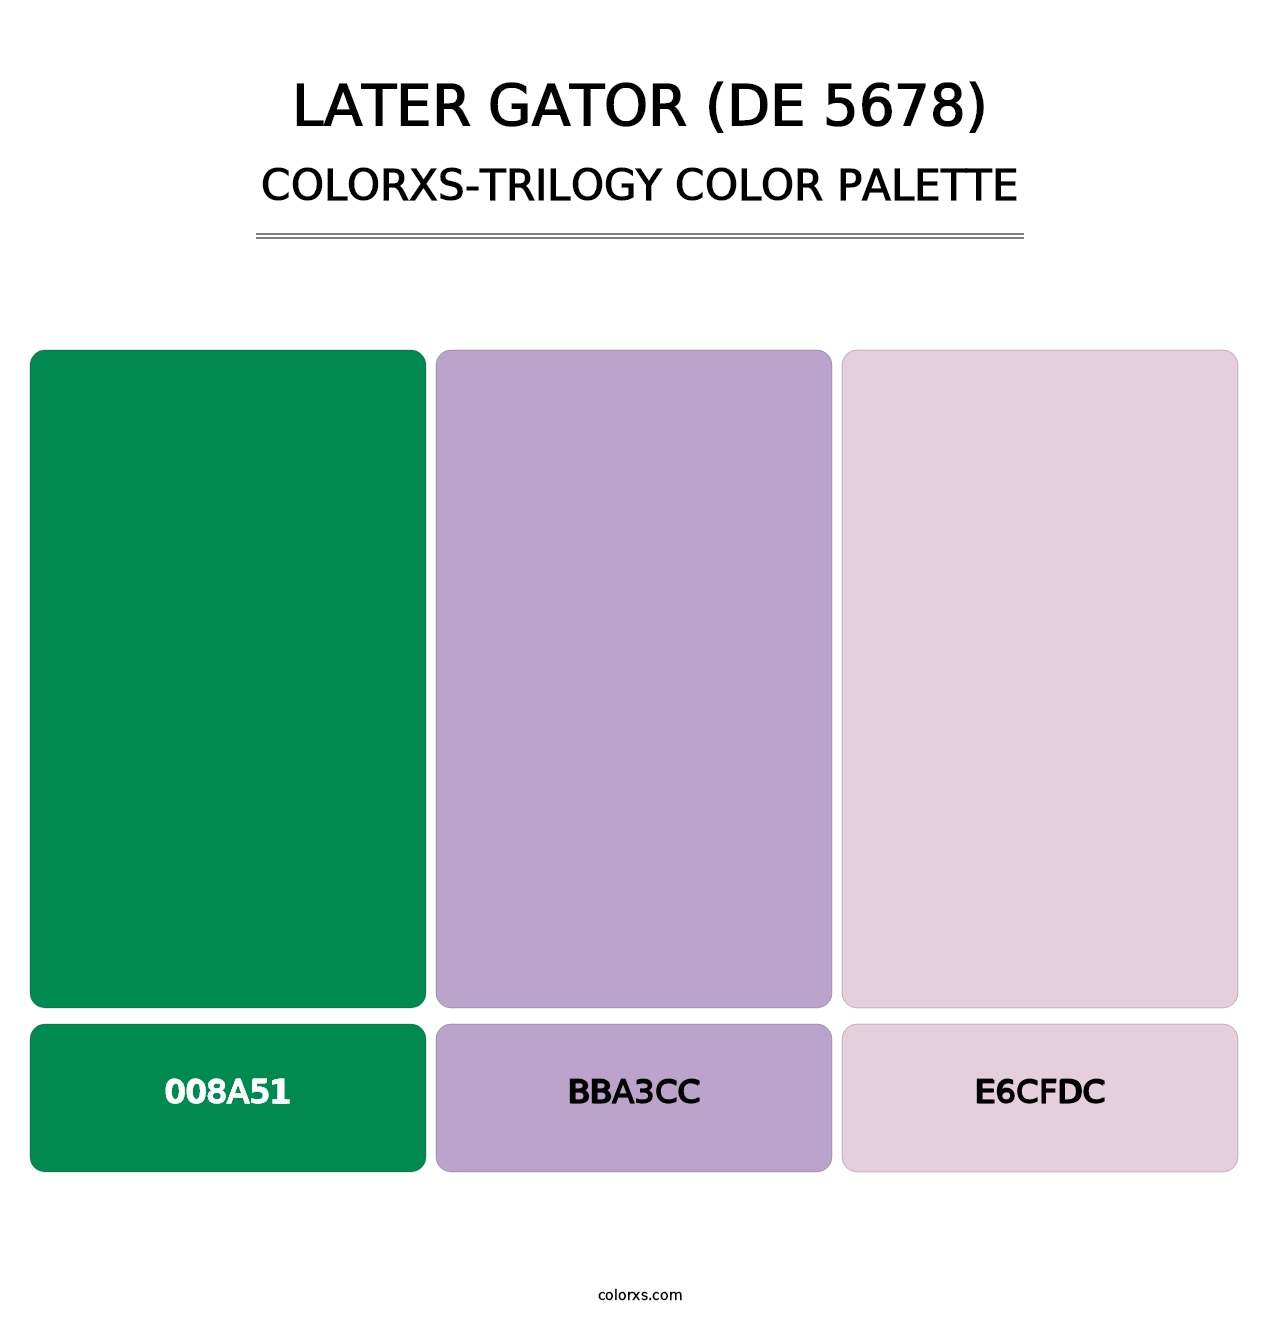 Later Gator (DE 5678) - Colorxs Trilogy Palette